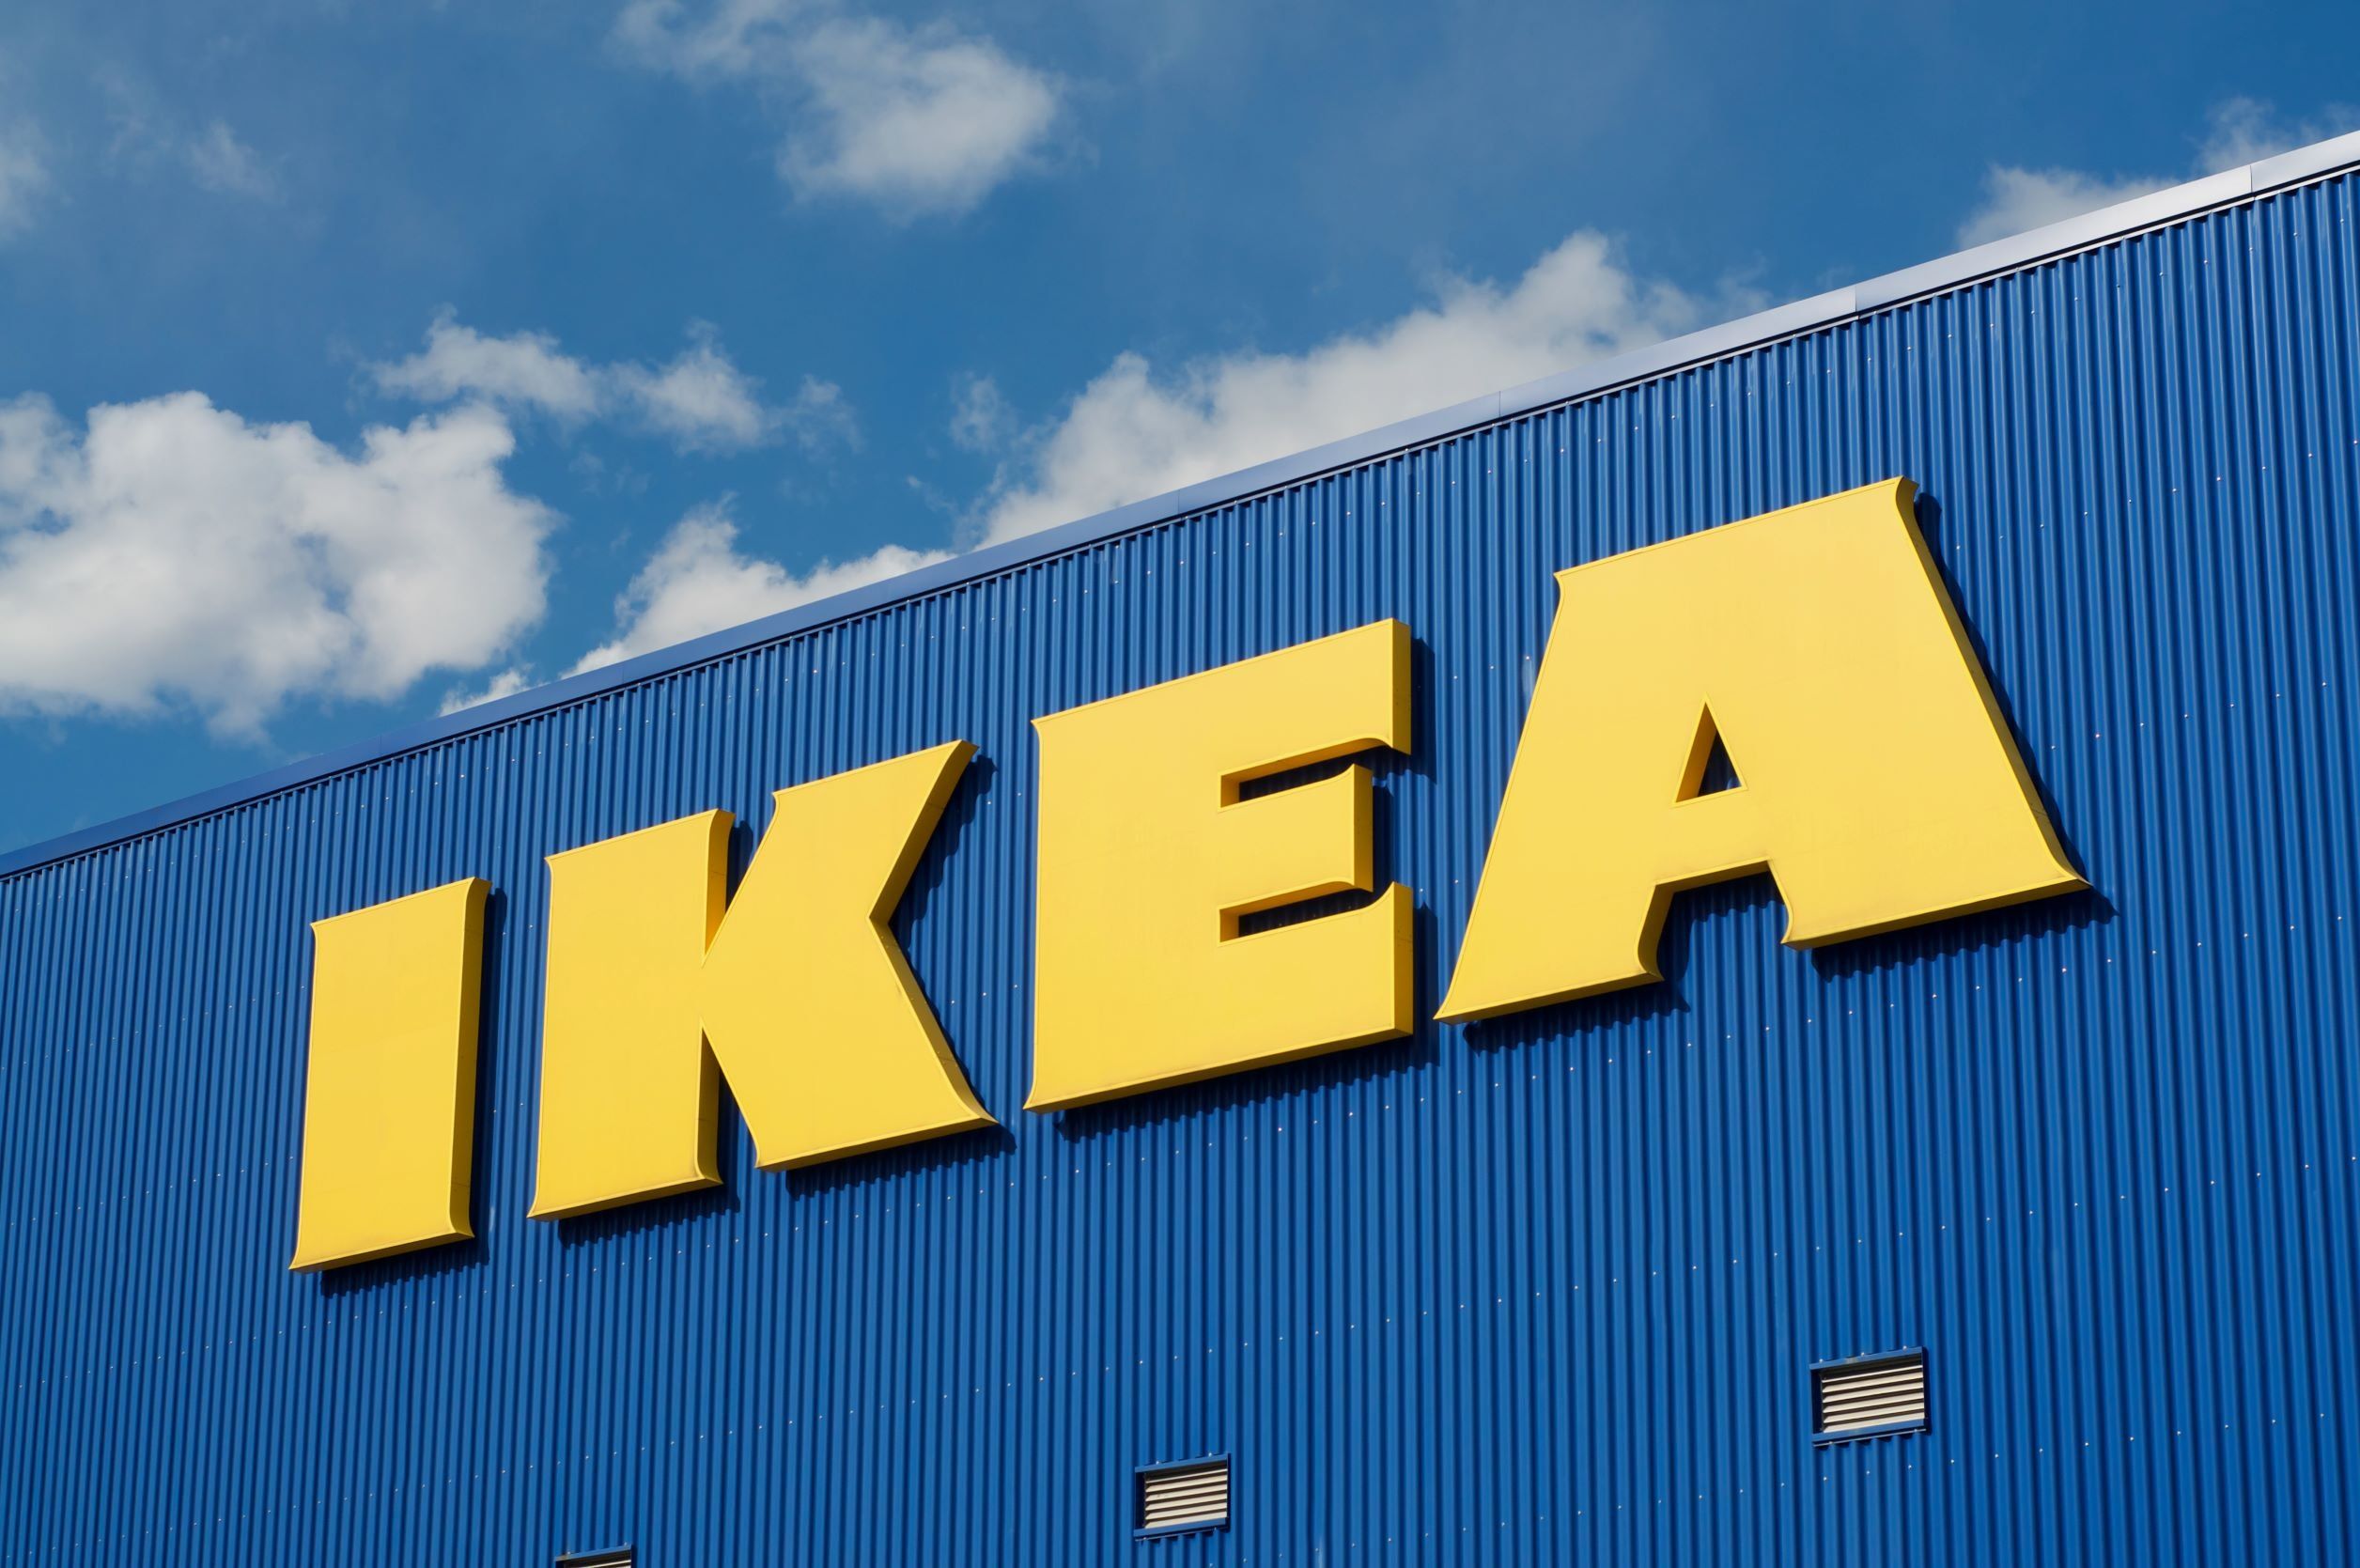 Komoly terjeszkedési terveket jelentett be az IKEA az Egyesült Államokban